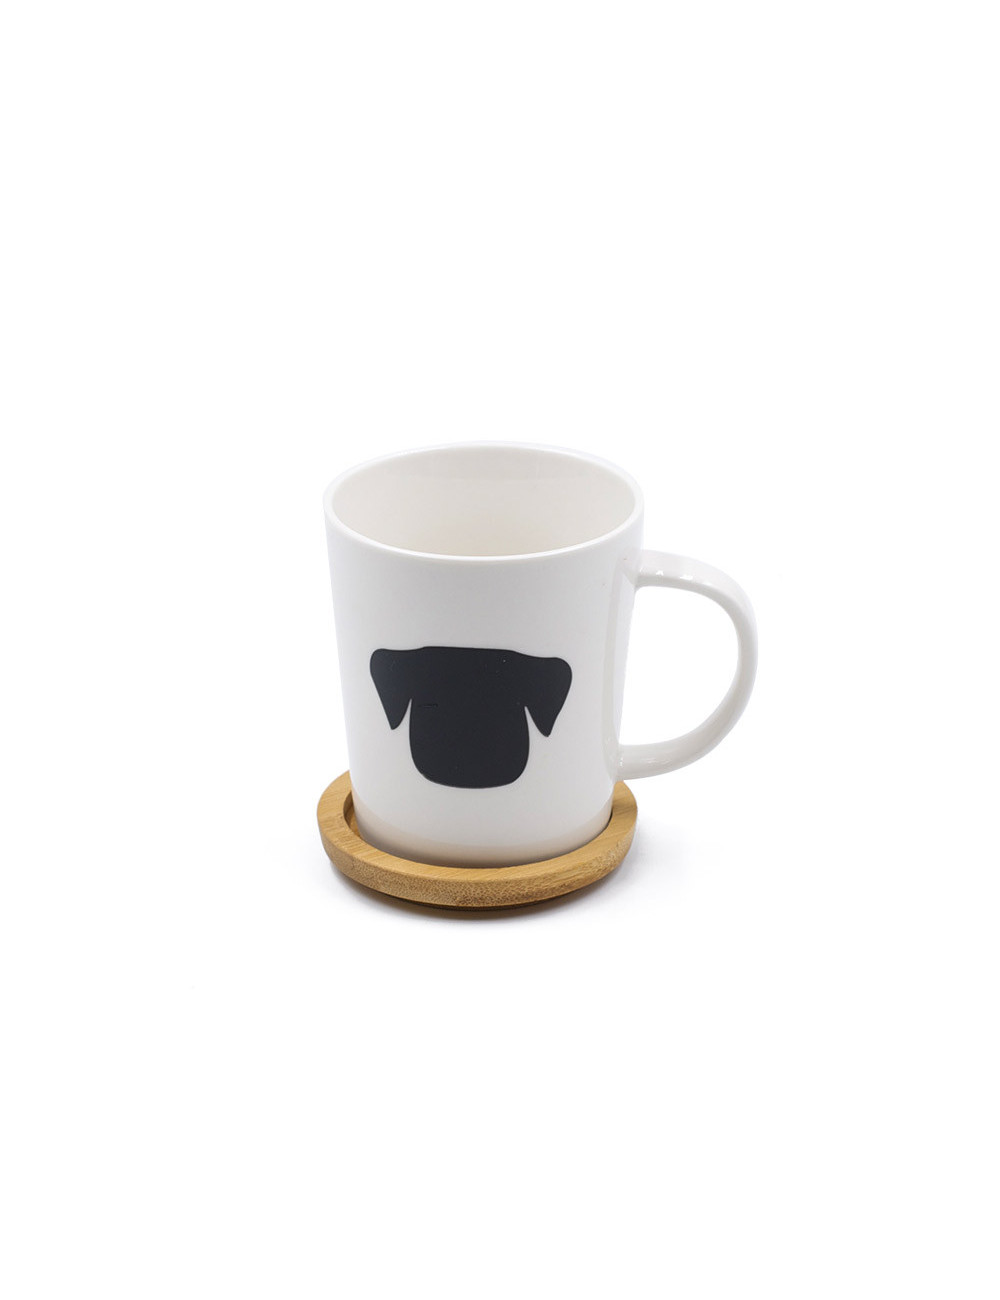 tazza da tè con coperchio e cucchiaio collega Tazza per gatti tazza da caffè in ceramica bianca con simpatico gatto 3D fidanzata e adolescenti regalo per gli amanti dei gatti 